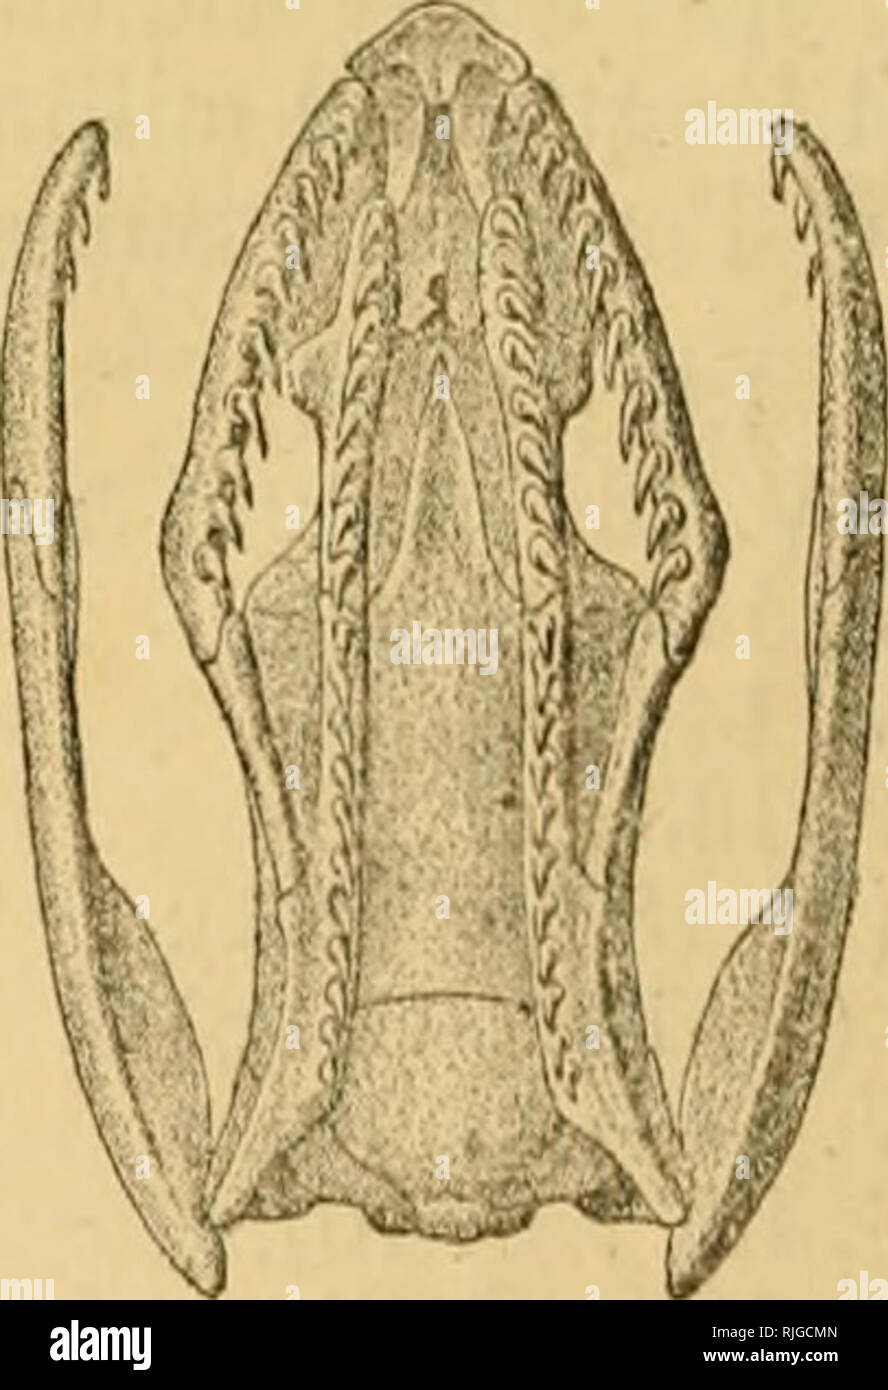 . Katalog der Schlangen im British Museum (Natural History)... Schlangen. Schädel von Calamaria parietals linncei. Die in Kontakt mit dem labials. Zylindrische Körper; Waage glatt, ohne Apikalen jnts, in 13 Zeilen; ventrals abgerundet. Schwanz kurz; subcaudals in zwei Zeilen. Prom Assam, Burma, und S. China zu den Malaiischen Archipel. Bitte beachten Sie, dass diese Bilder sind von der gescannten Seite Bilder, die digital für die Lesbarkeit verbessert haben mögen - Färbung und Aussehen dieser Abbildungen können nicht perfekt dem Original ähneln. extrahiert. British Museum (Natural History). Abt. der Zoolog Stockfoto